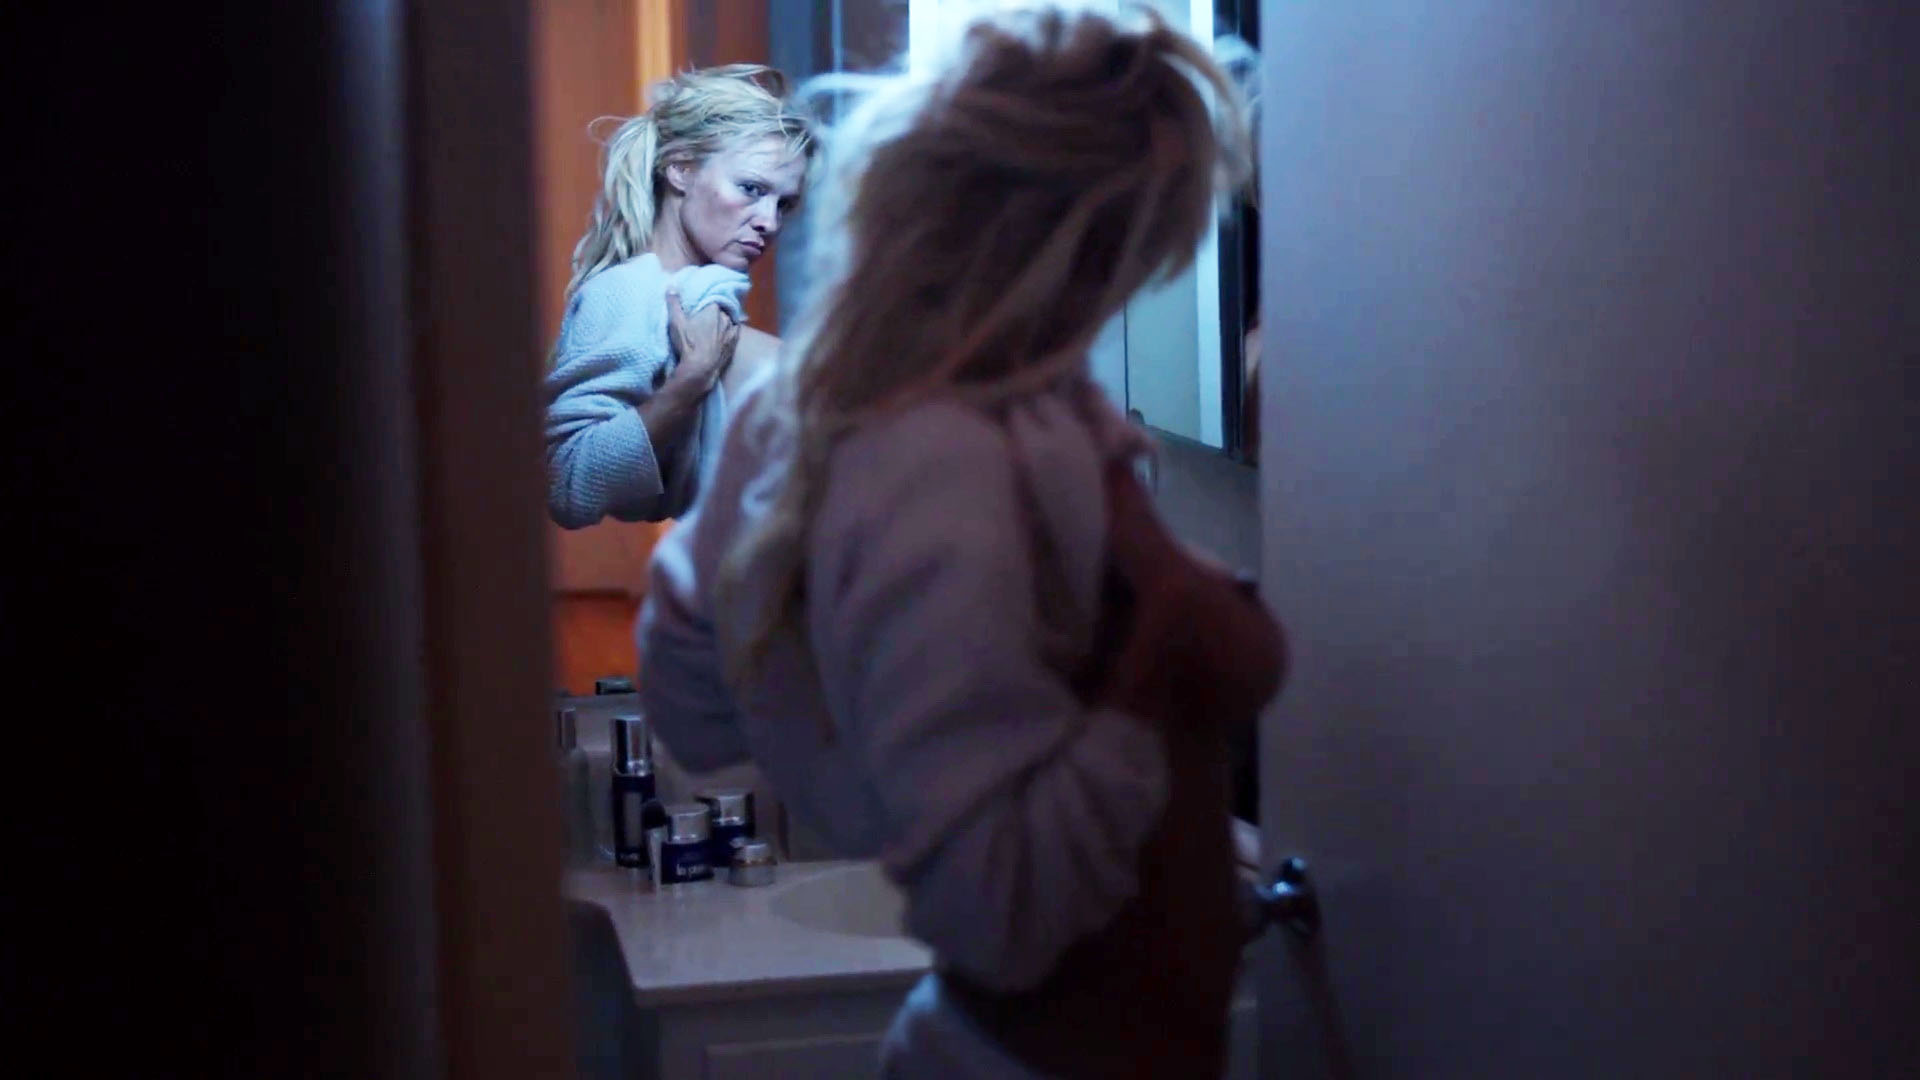 Watch Online Tara Holt Pamela Adlon Californication S07e02 2014 Hd 720p